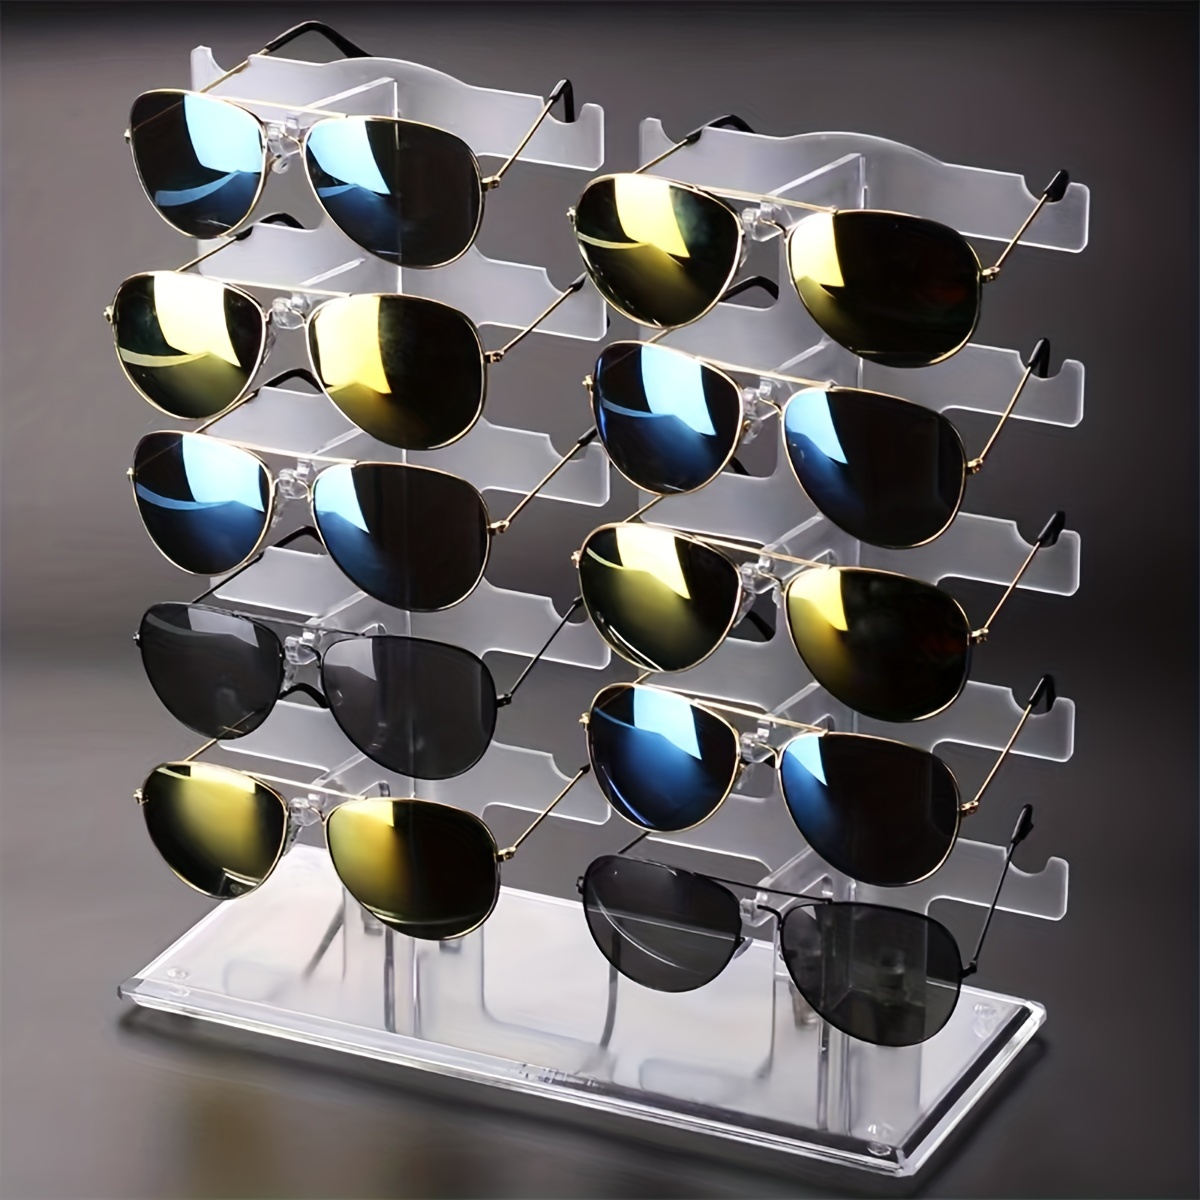 Sonnenbrillen Display - Kostenloser Versand Für Neue Benutzer